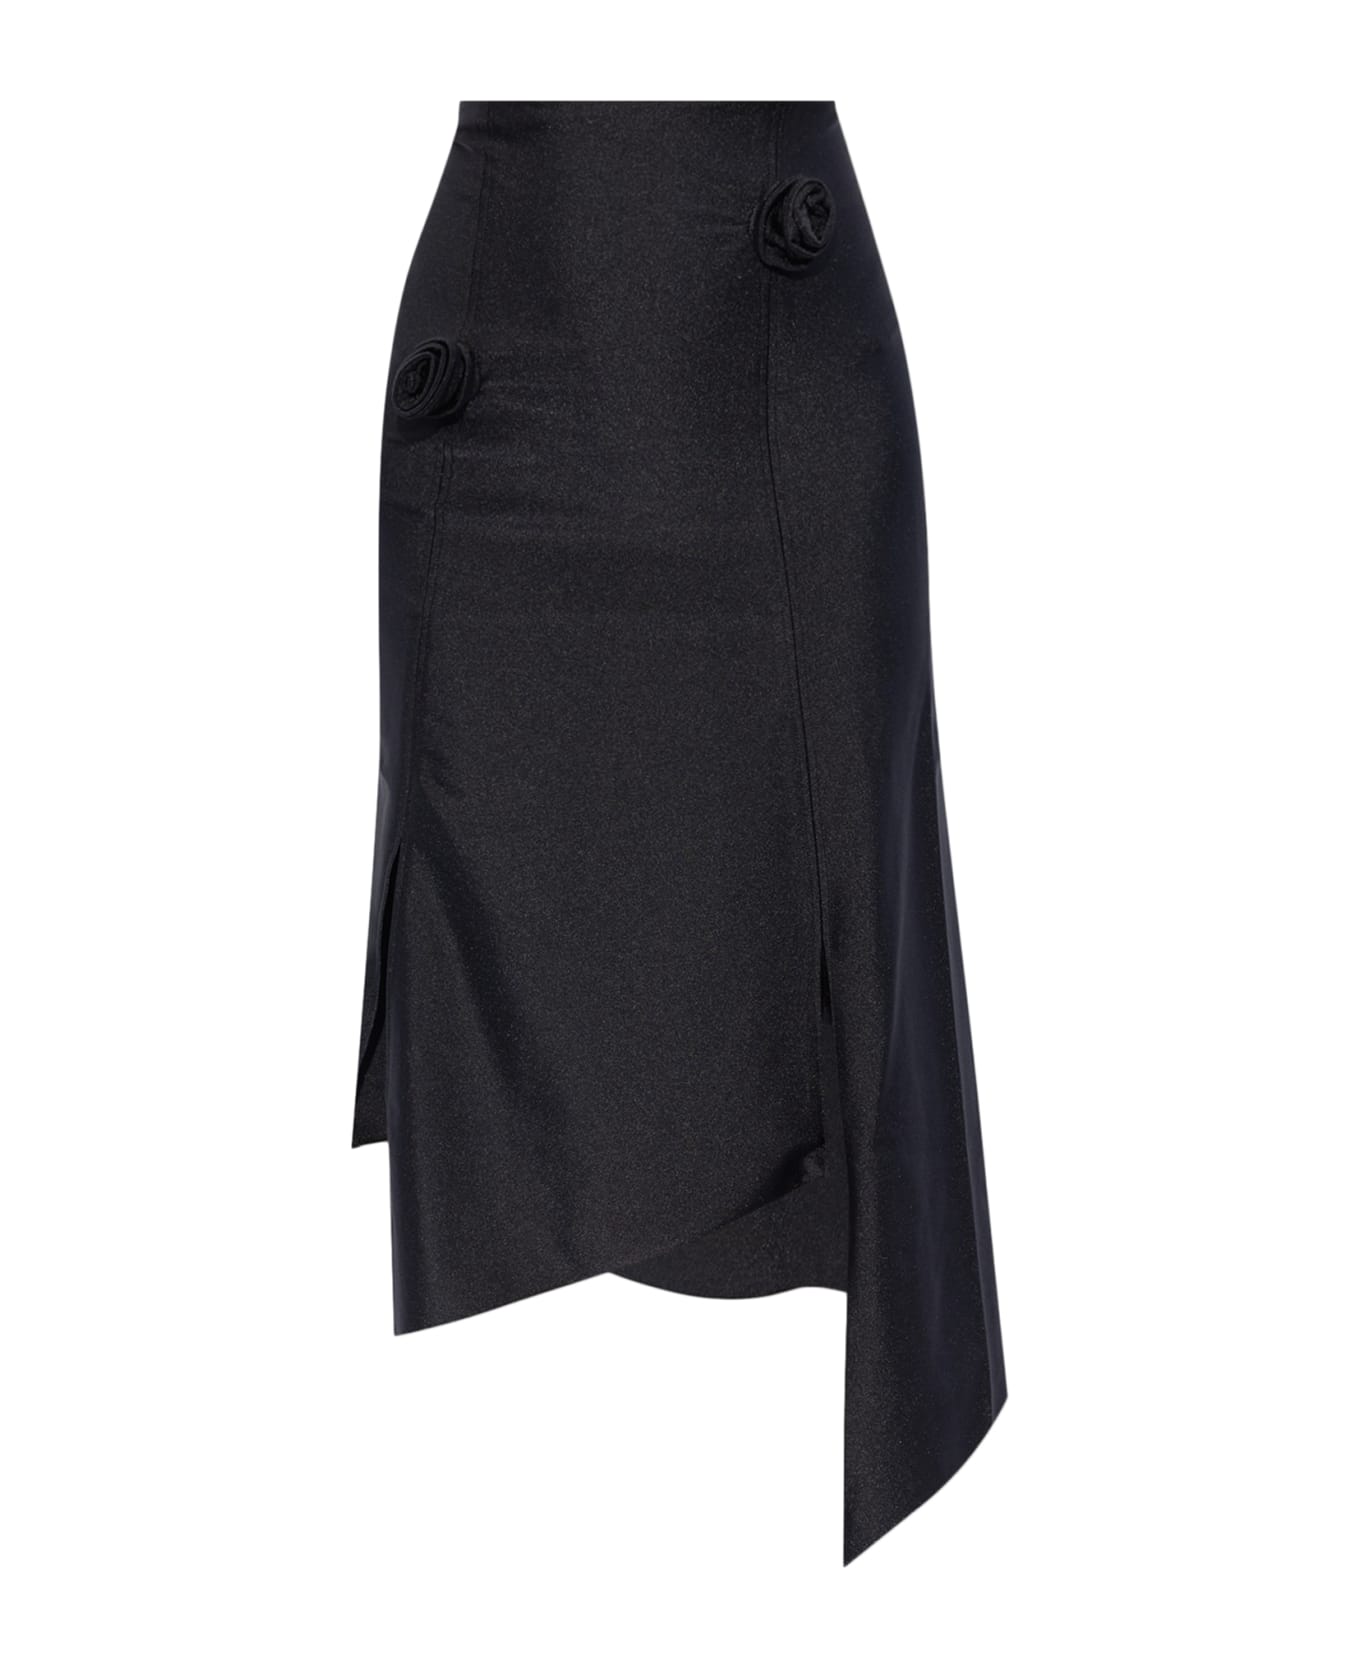 Coperni Flower Skirt - Blkklb Black